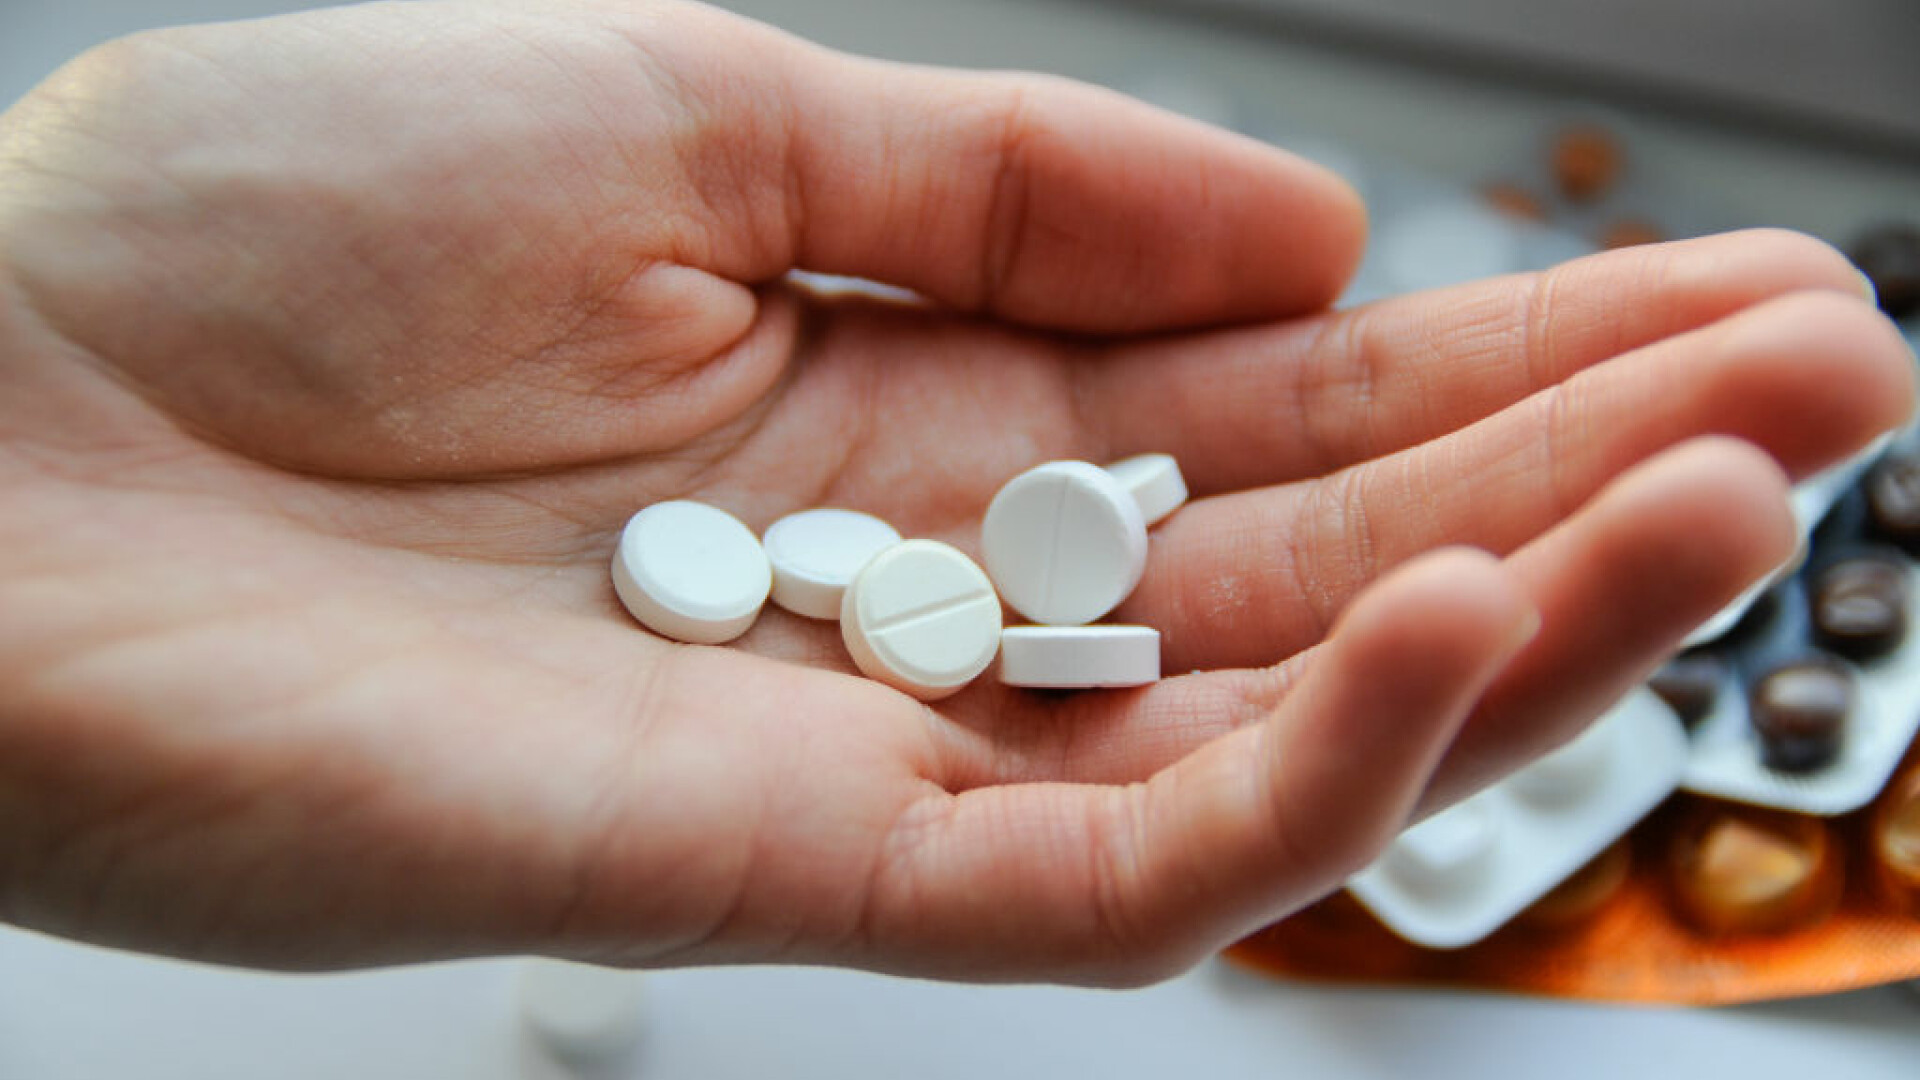 Aspirina ar putea ajuta la tratarea formelor agresive de cancer la sân